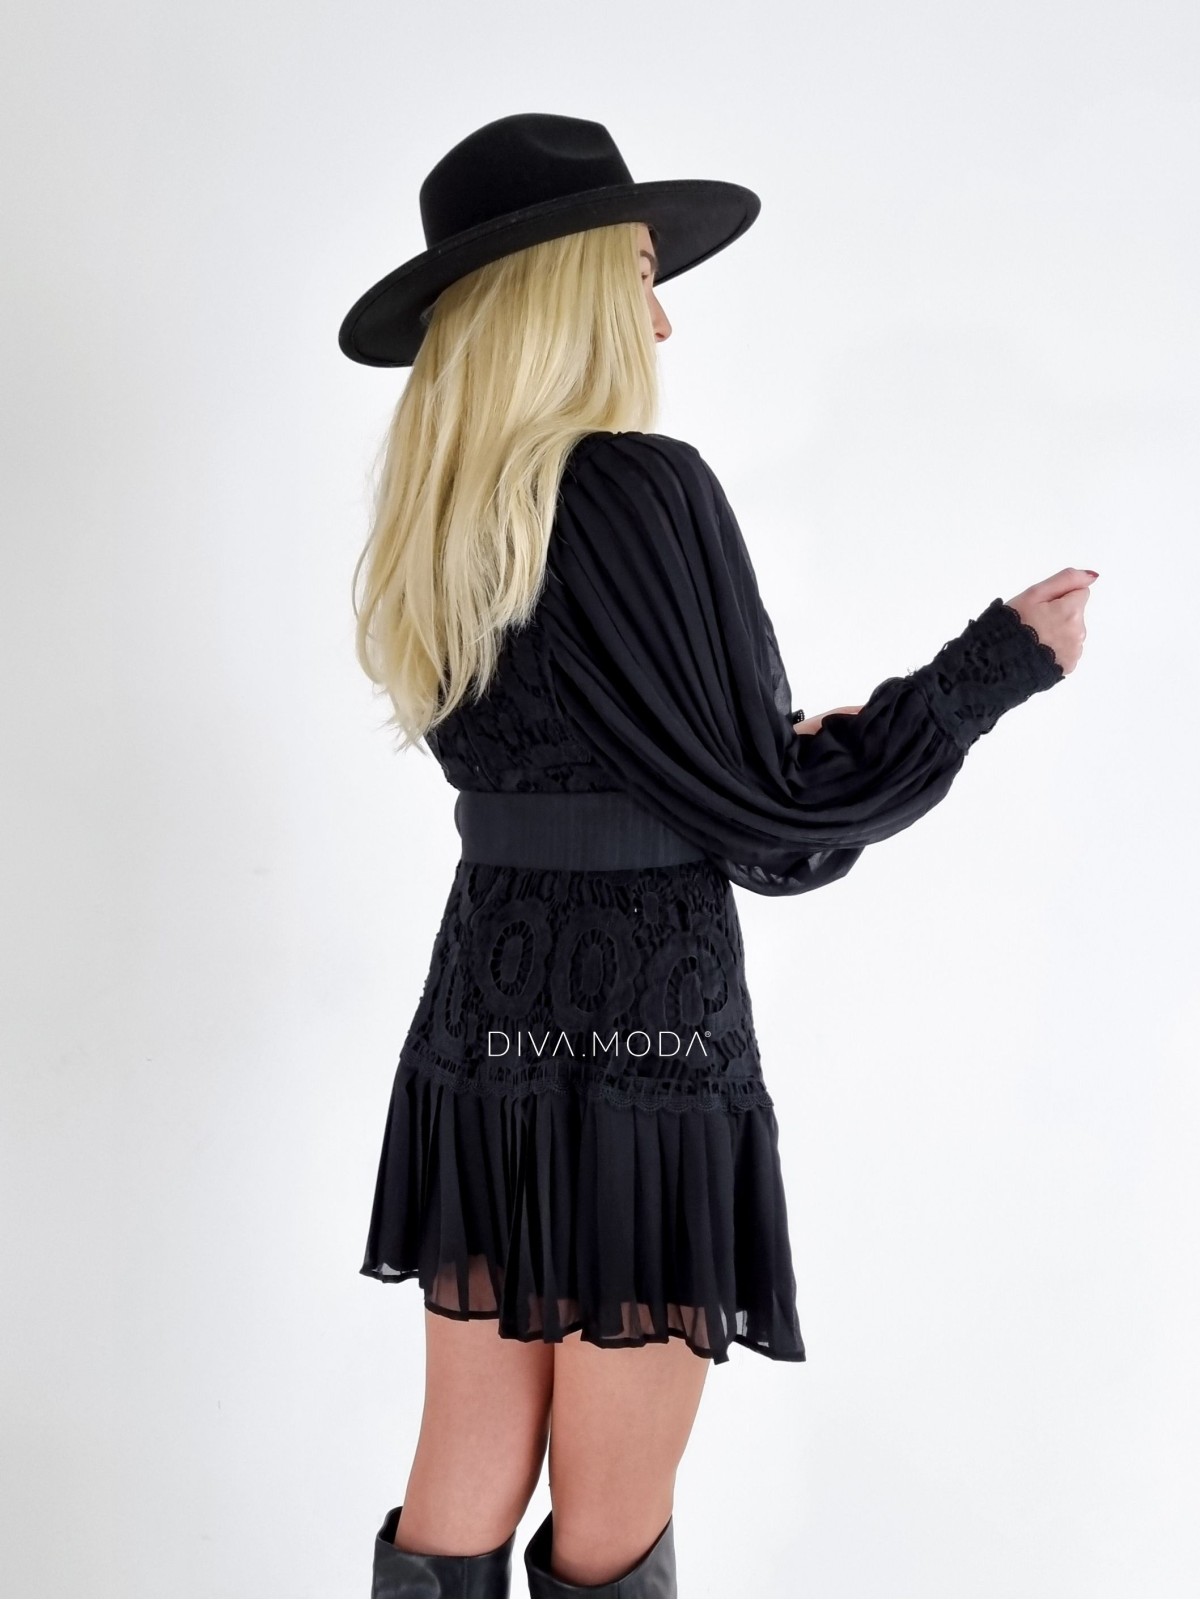 Krajkované šaty s puf rukávem a páskem Glam černé A 55